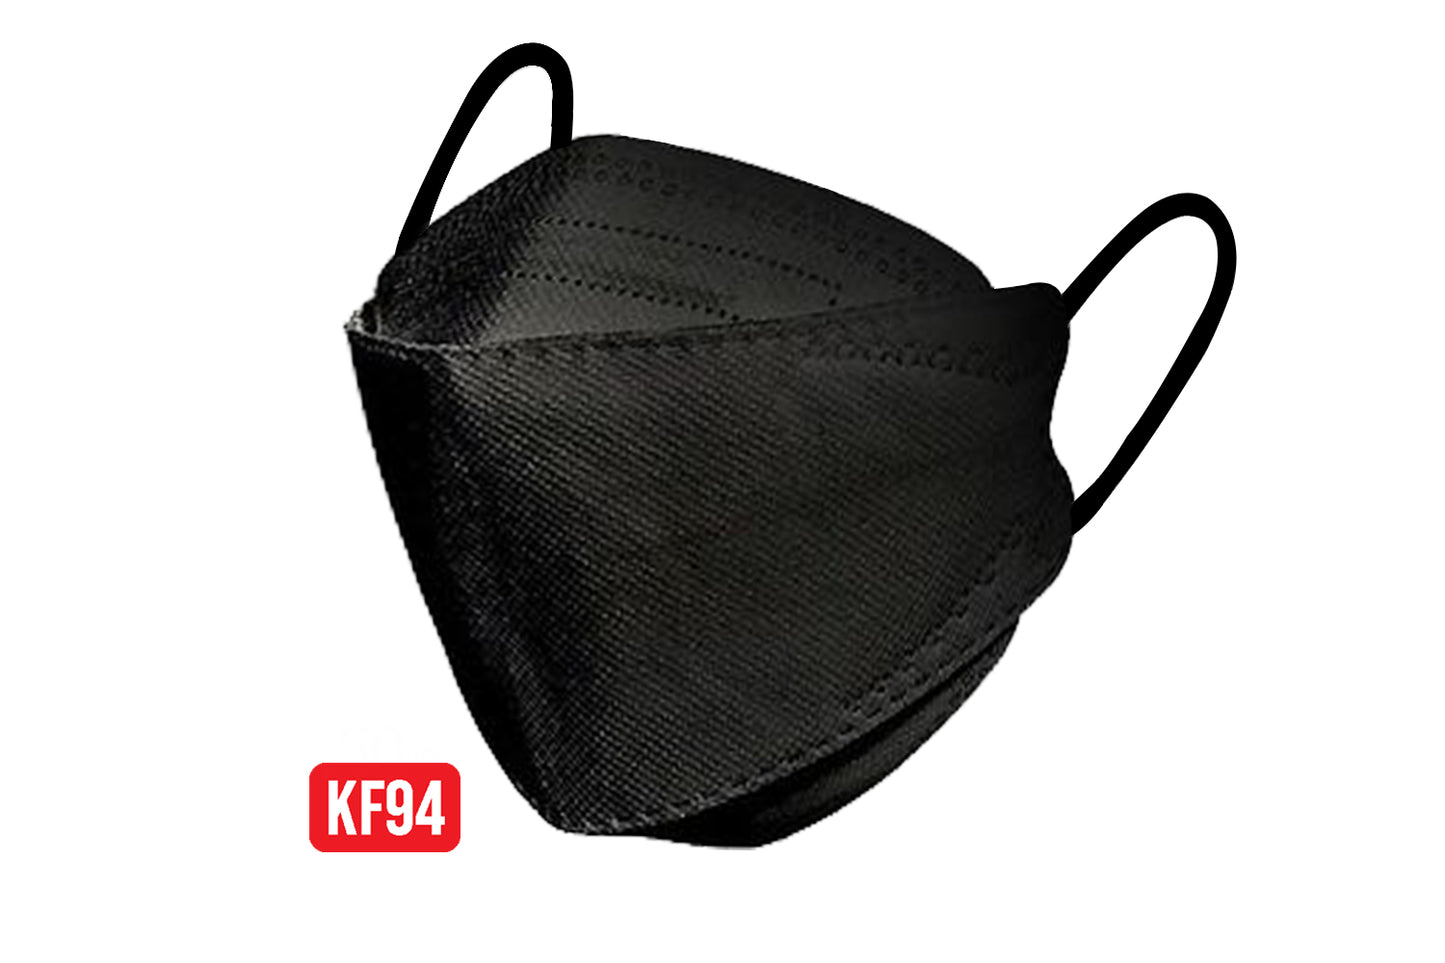 KF94 Black - 1 pcs